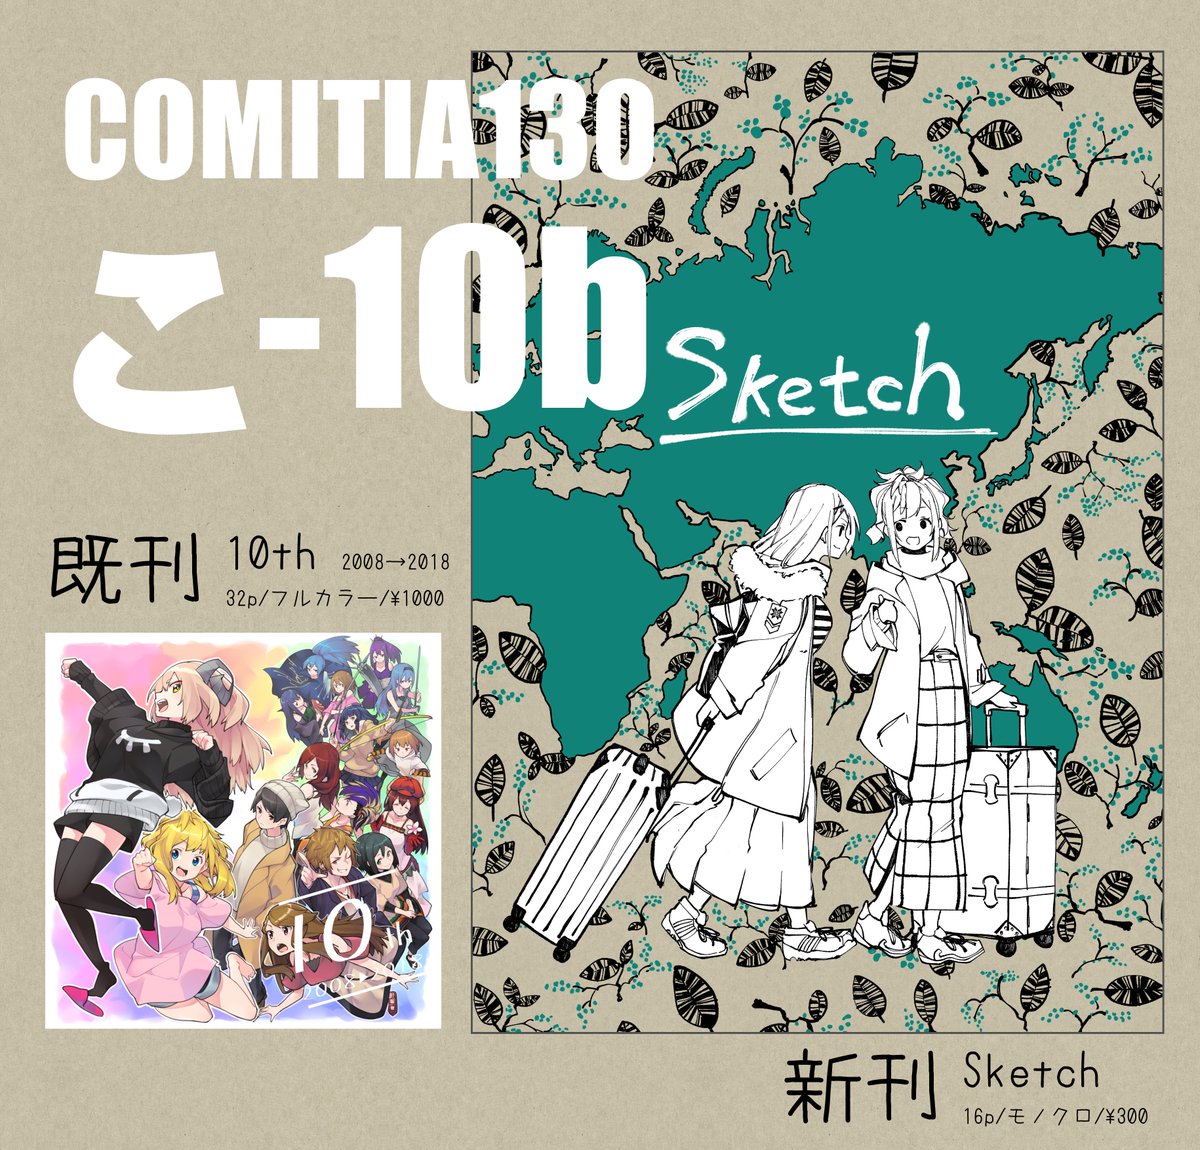 コミティア130よろしくです!!!!
#コミティア130
#COMITIA130 